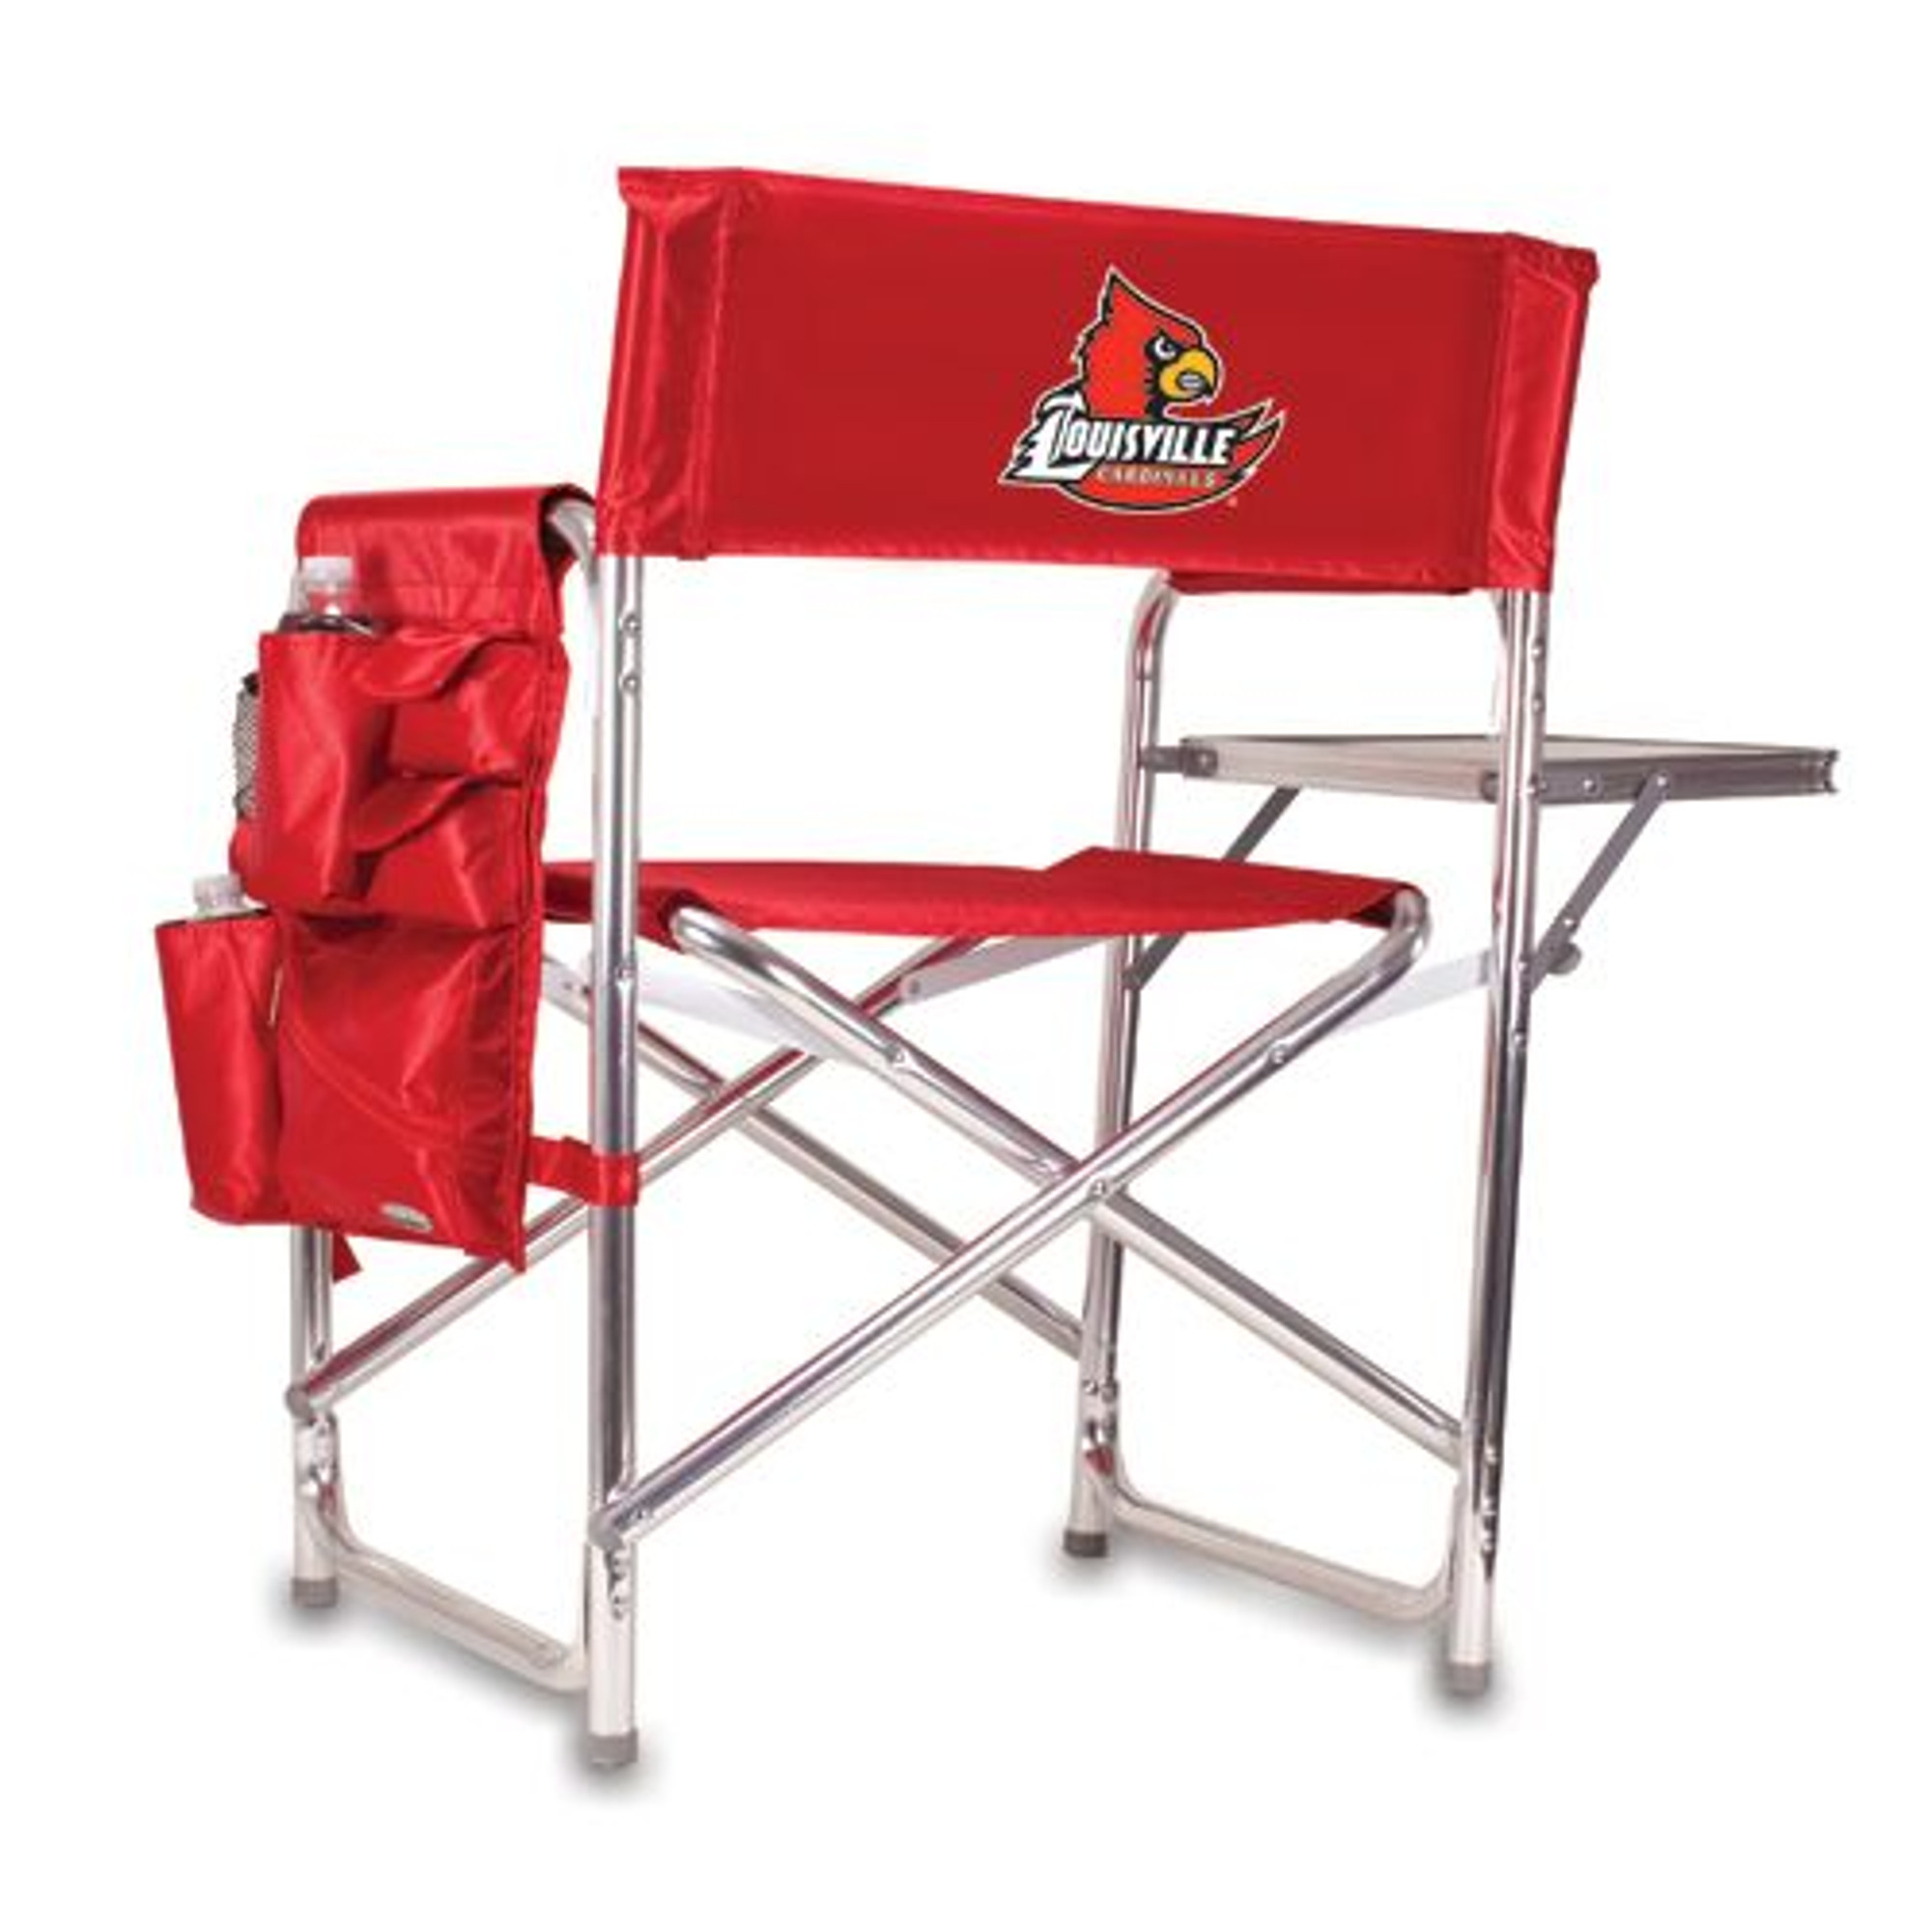 Louisville Cardinals Sports Chair